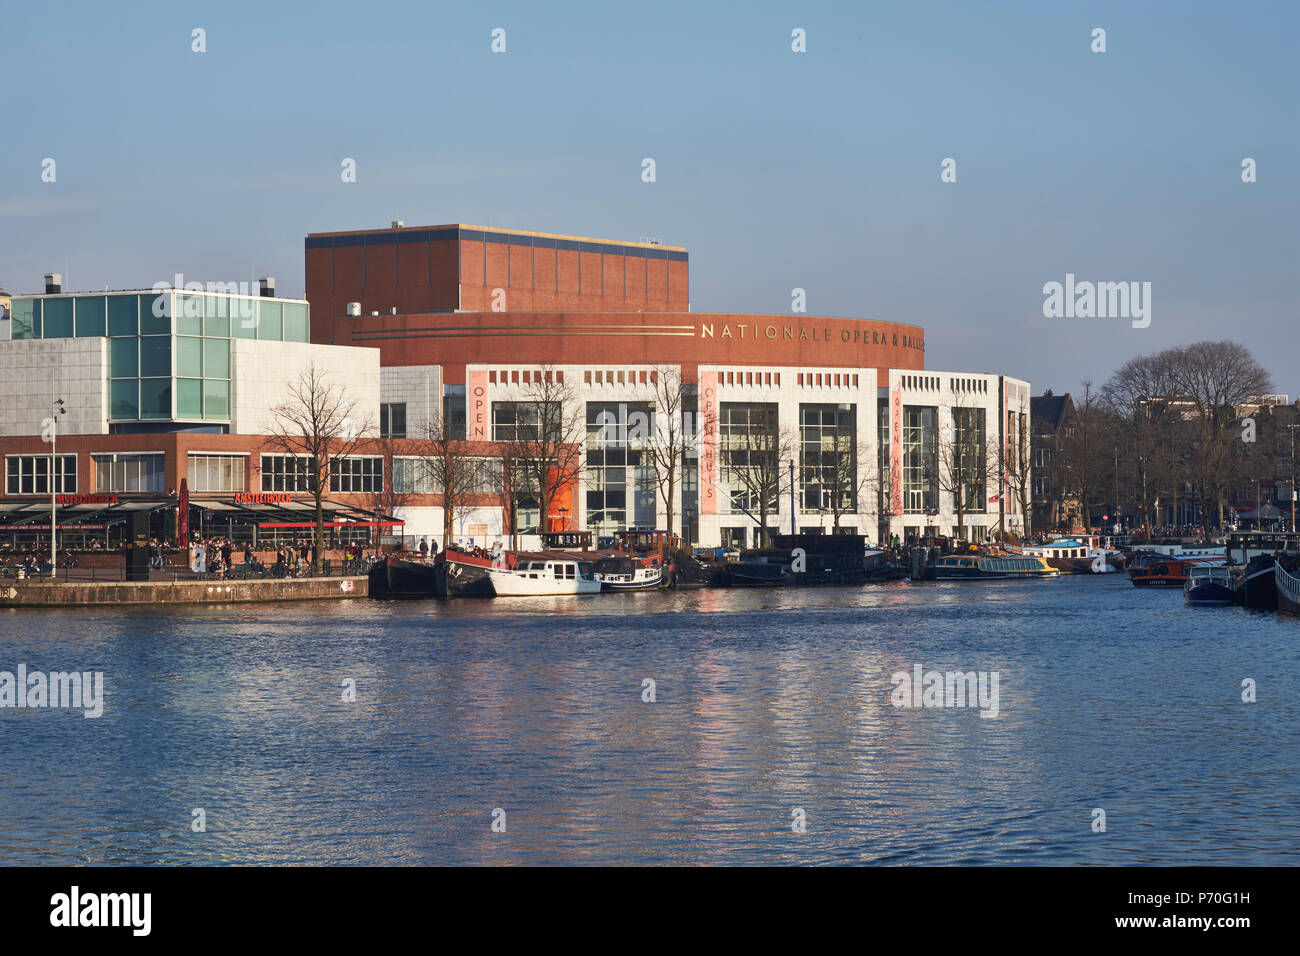 Dutch National Opera e Balletto in Amsterdam, sul confine del fiume Amstel a Waterlooplein. Costruito degli anni ottanta da architetto olandese Cees Dam. Foto Stock